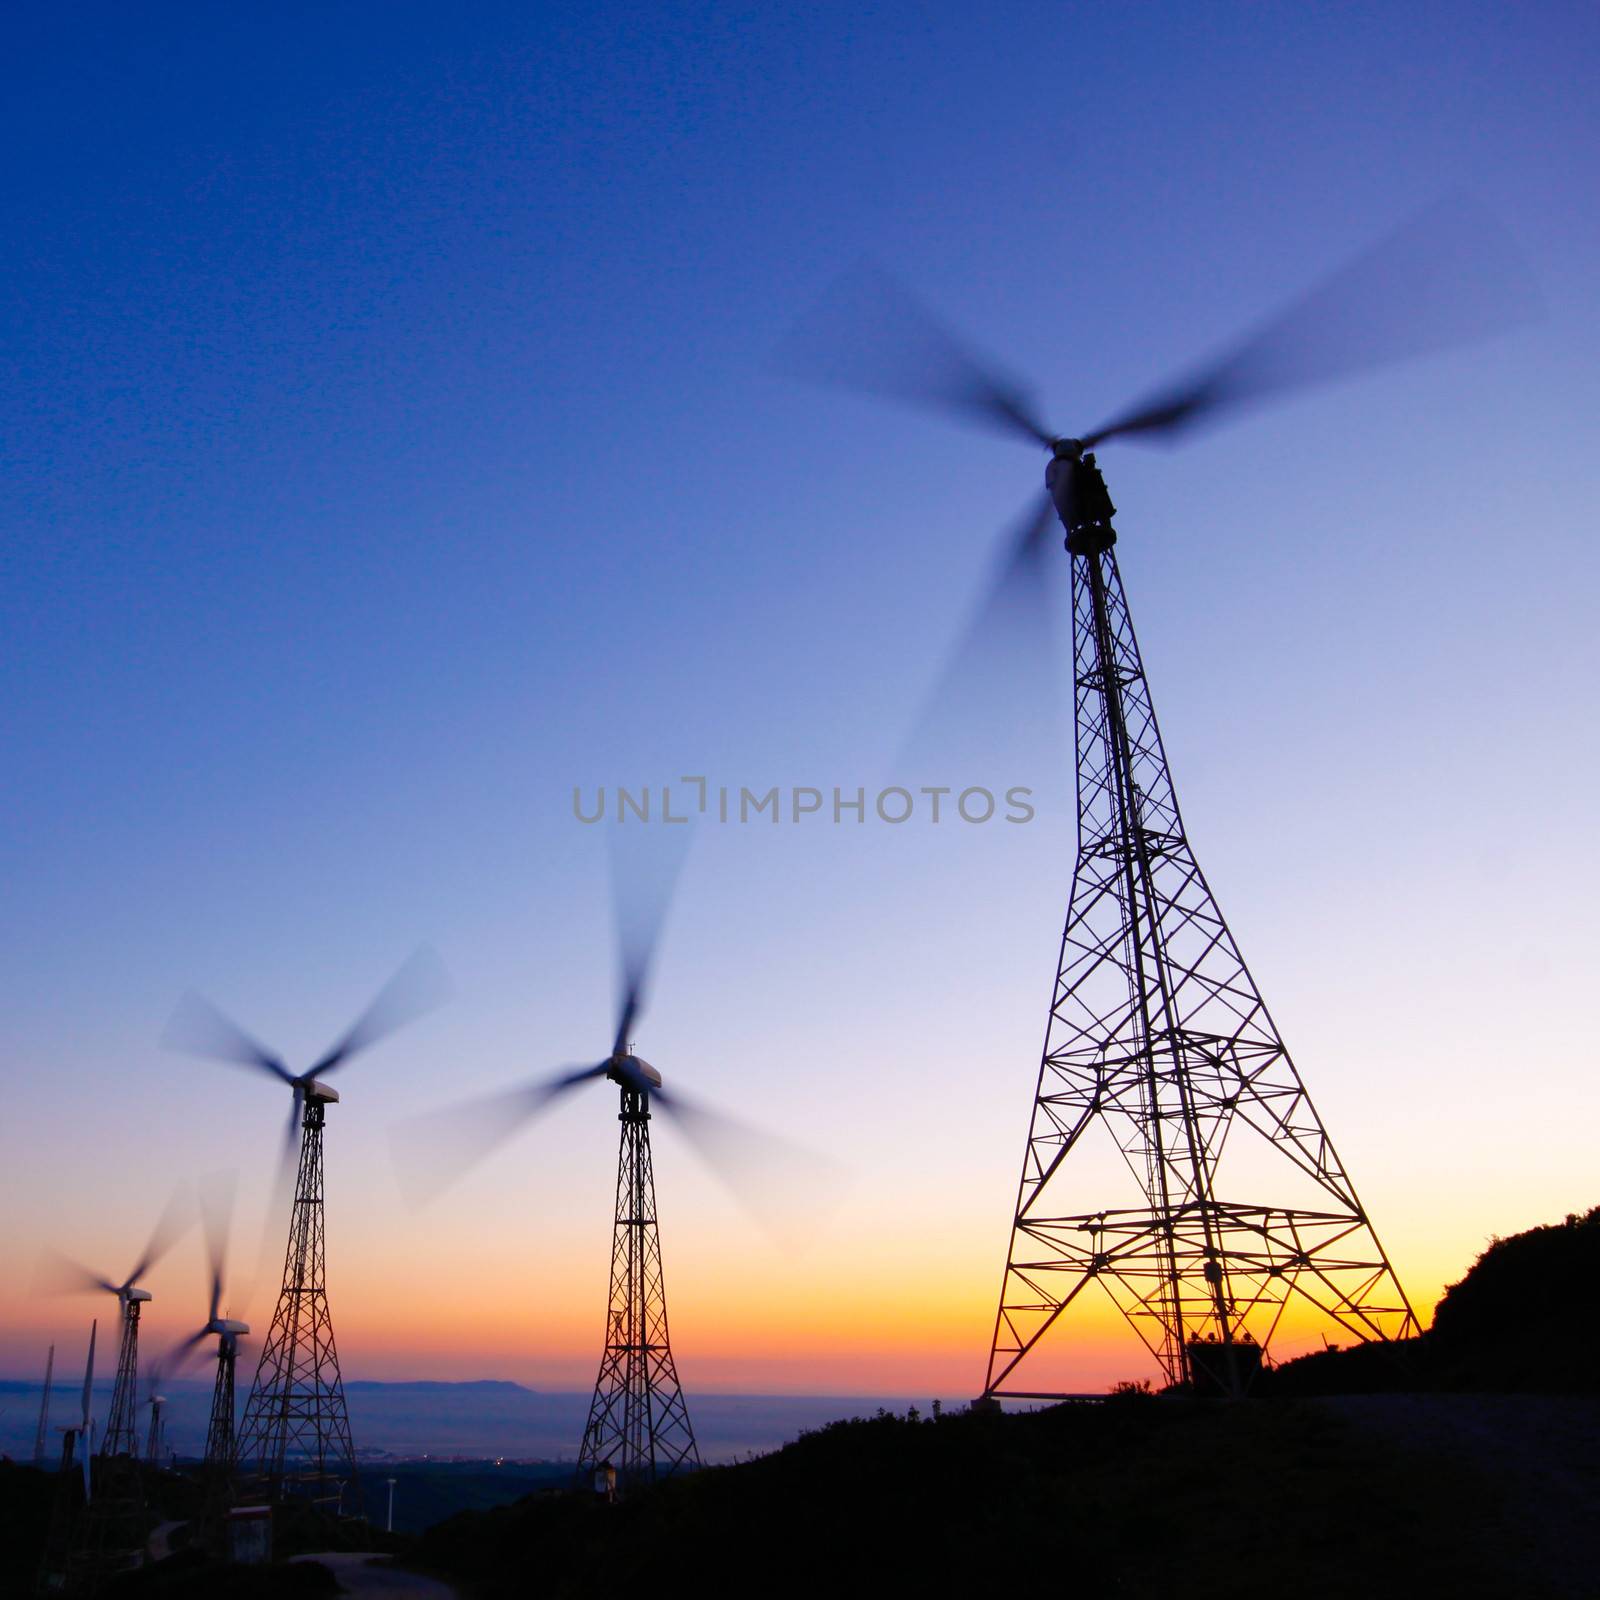 Wind farm in sunset by kasto